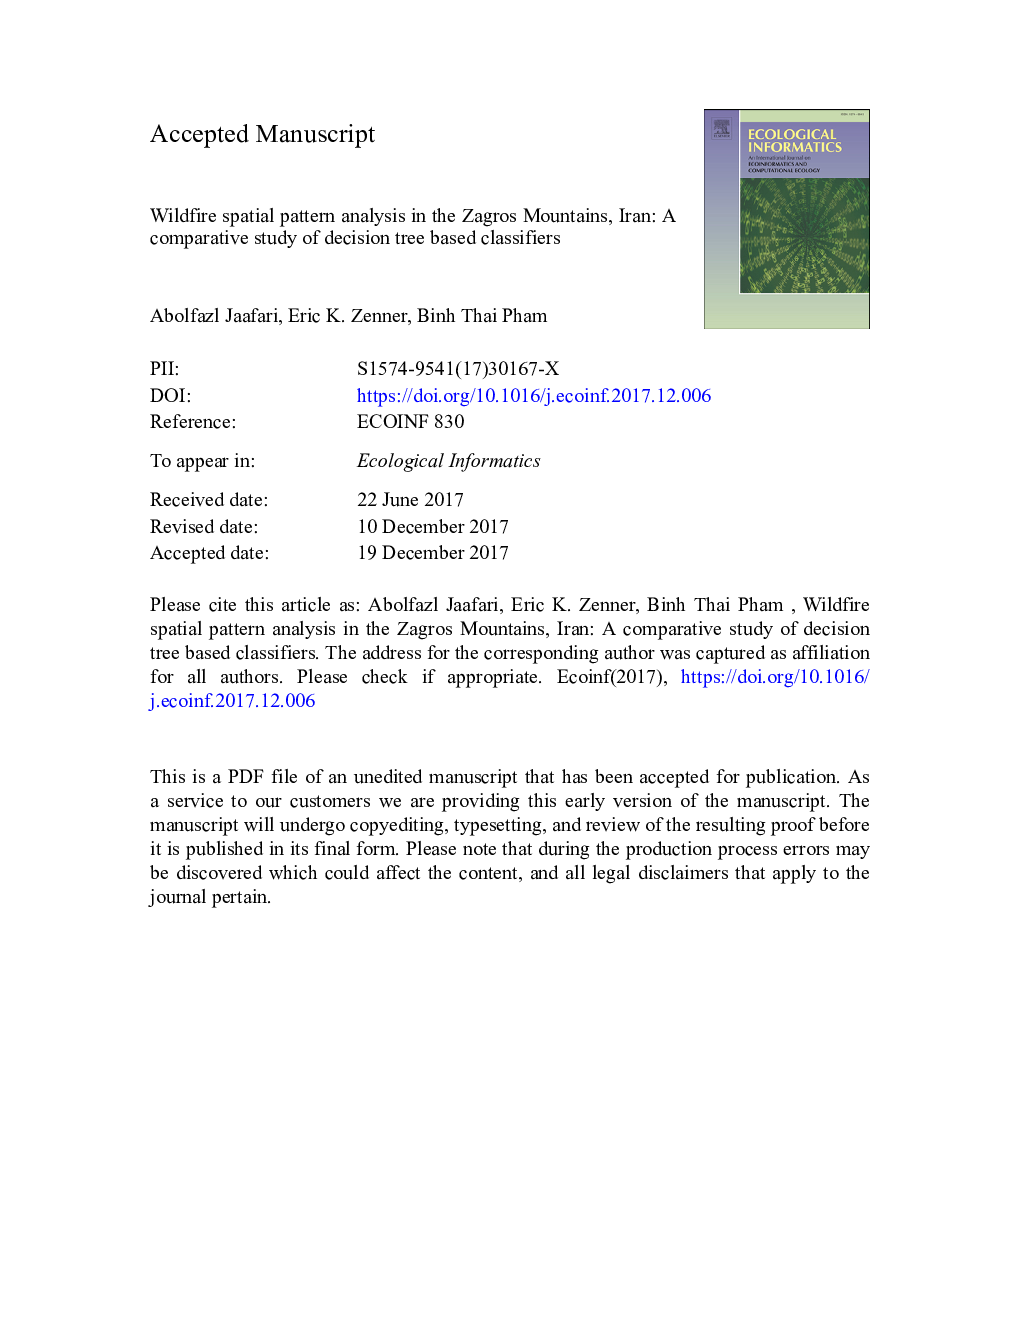 تجزیه و تحلیل الگوی فضایی جنگل در کوه های زاگرس، ایران: یک مطالعه مقایسه ای در طبقه بندی های مبتنی بر درخت تصمیم گیری 